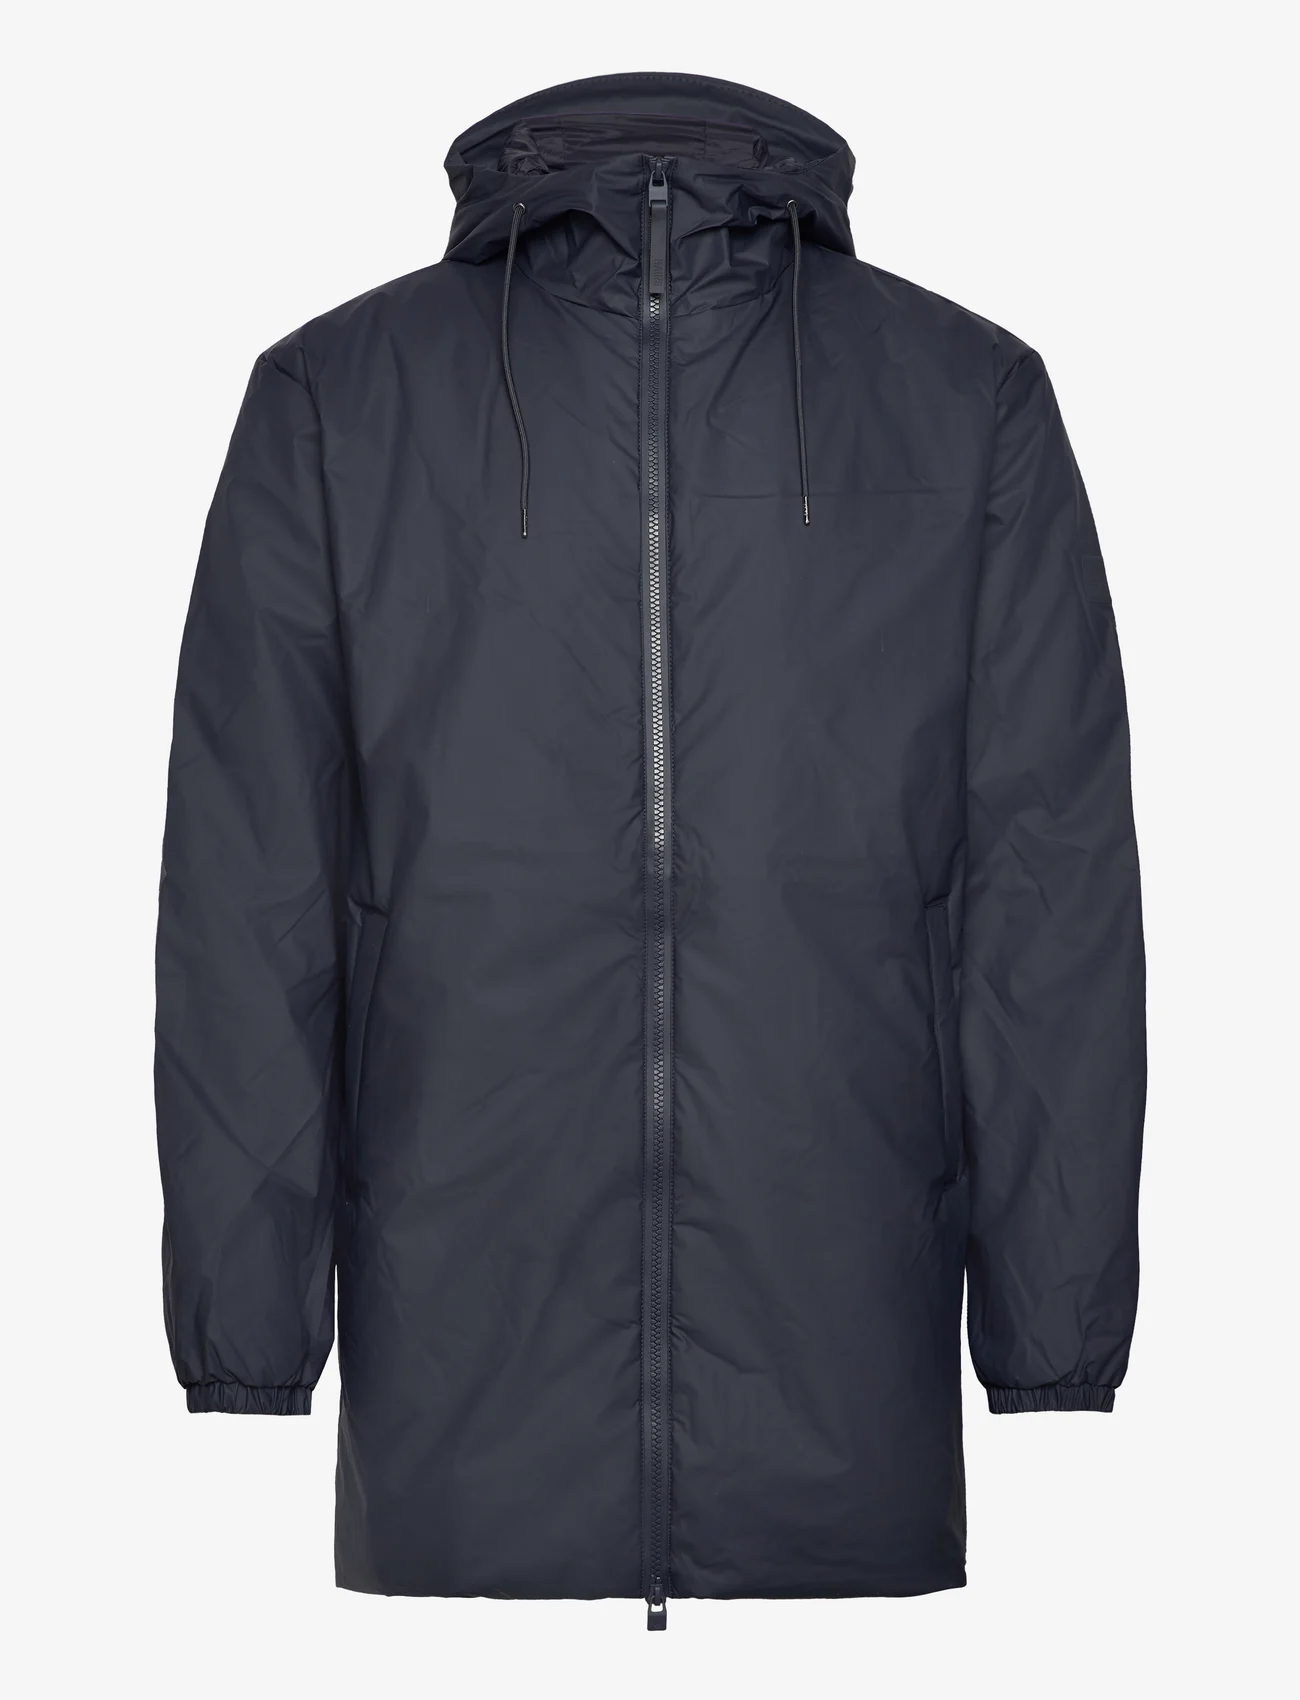 Rains - Lohja Long Insulated Jacket W3T2 - parka's - navy - 0